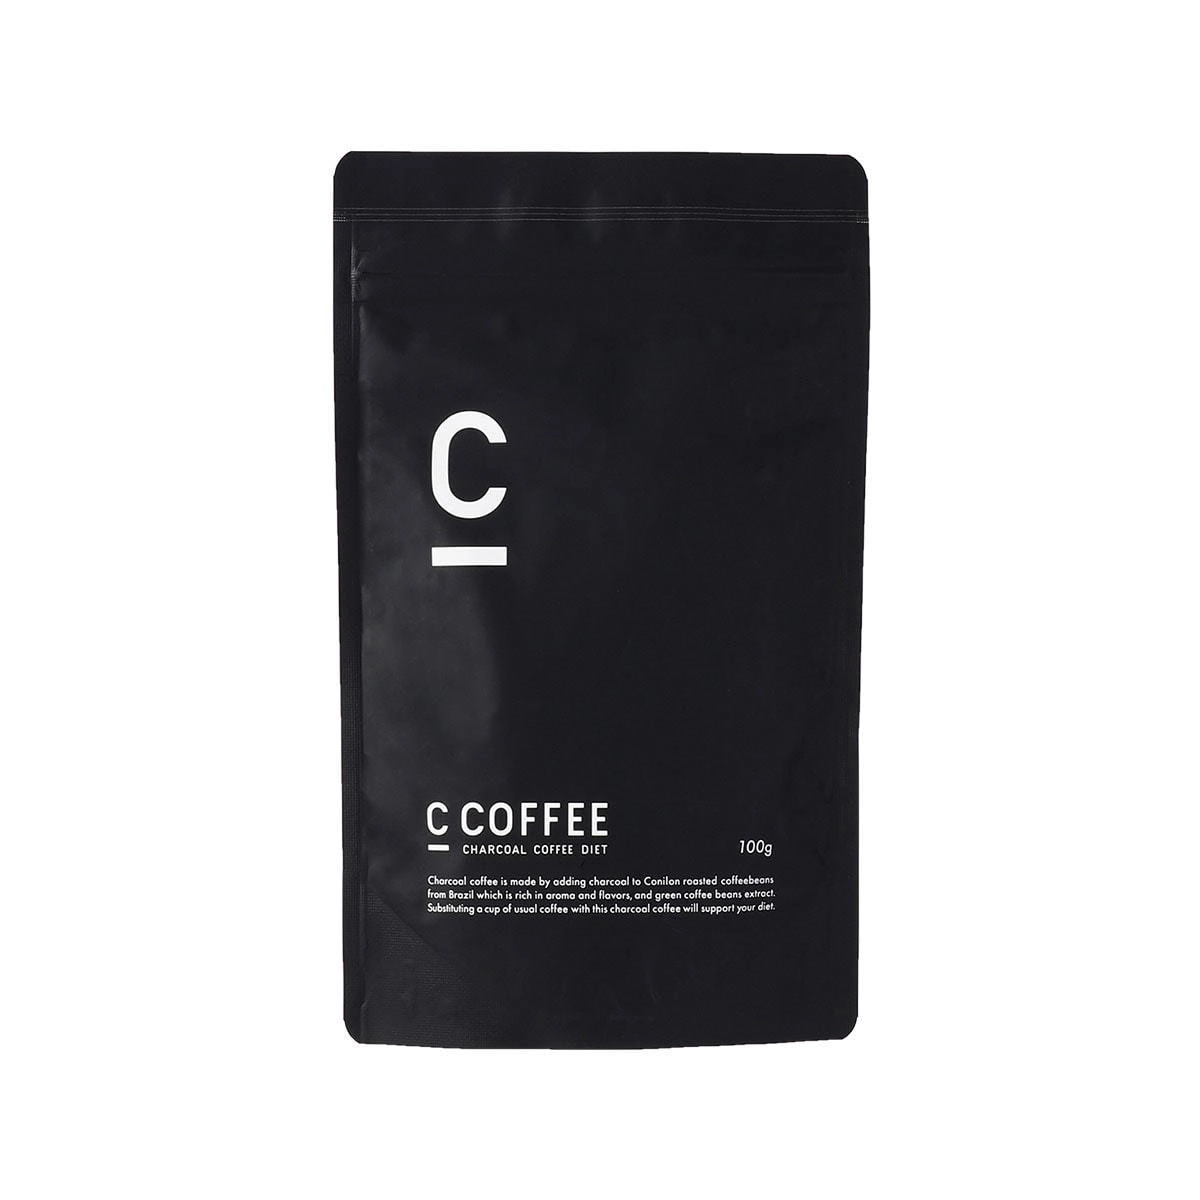 C COFFEE 100g 2袋セット